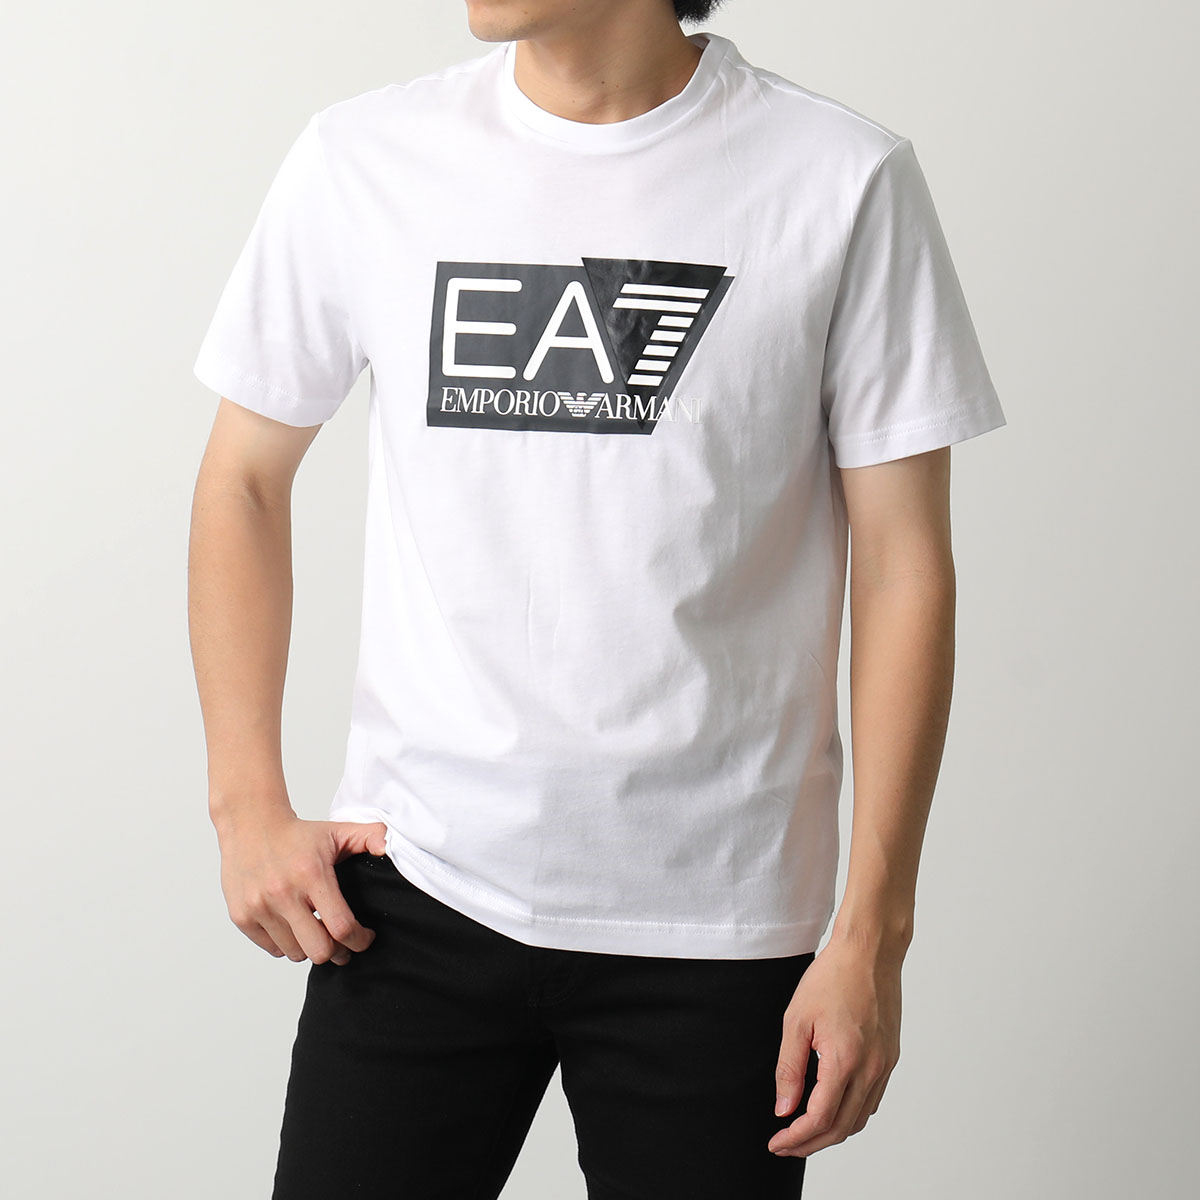 EA7 EMPORIO ARMANI エアセッテ エンポリオアルマーニ Tシャツ 3DPT81 PJM9Z メンズ 半袖 カットソー クルーネック  ロゴT コットン カラー2色